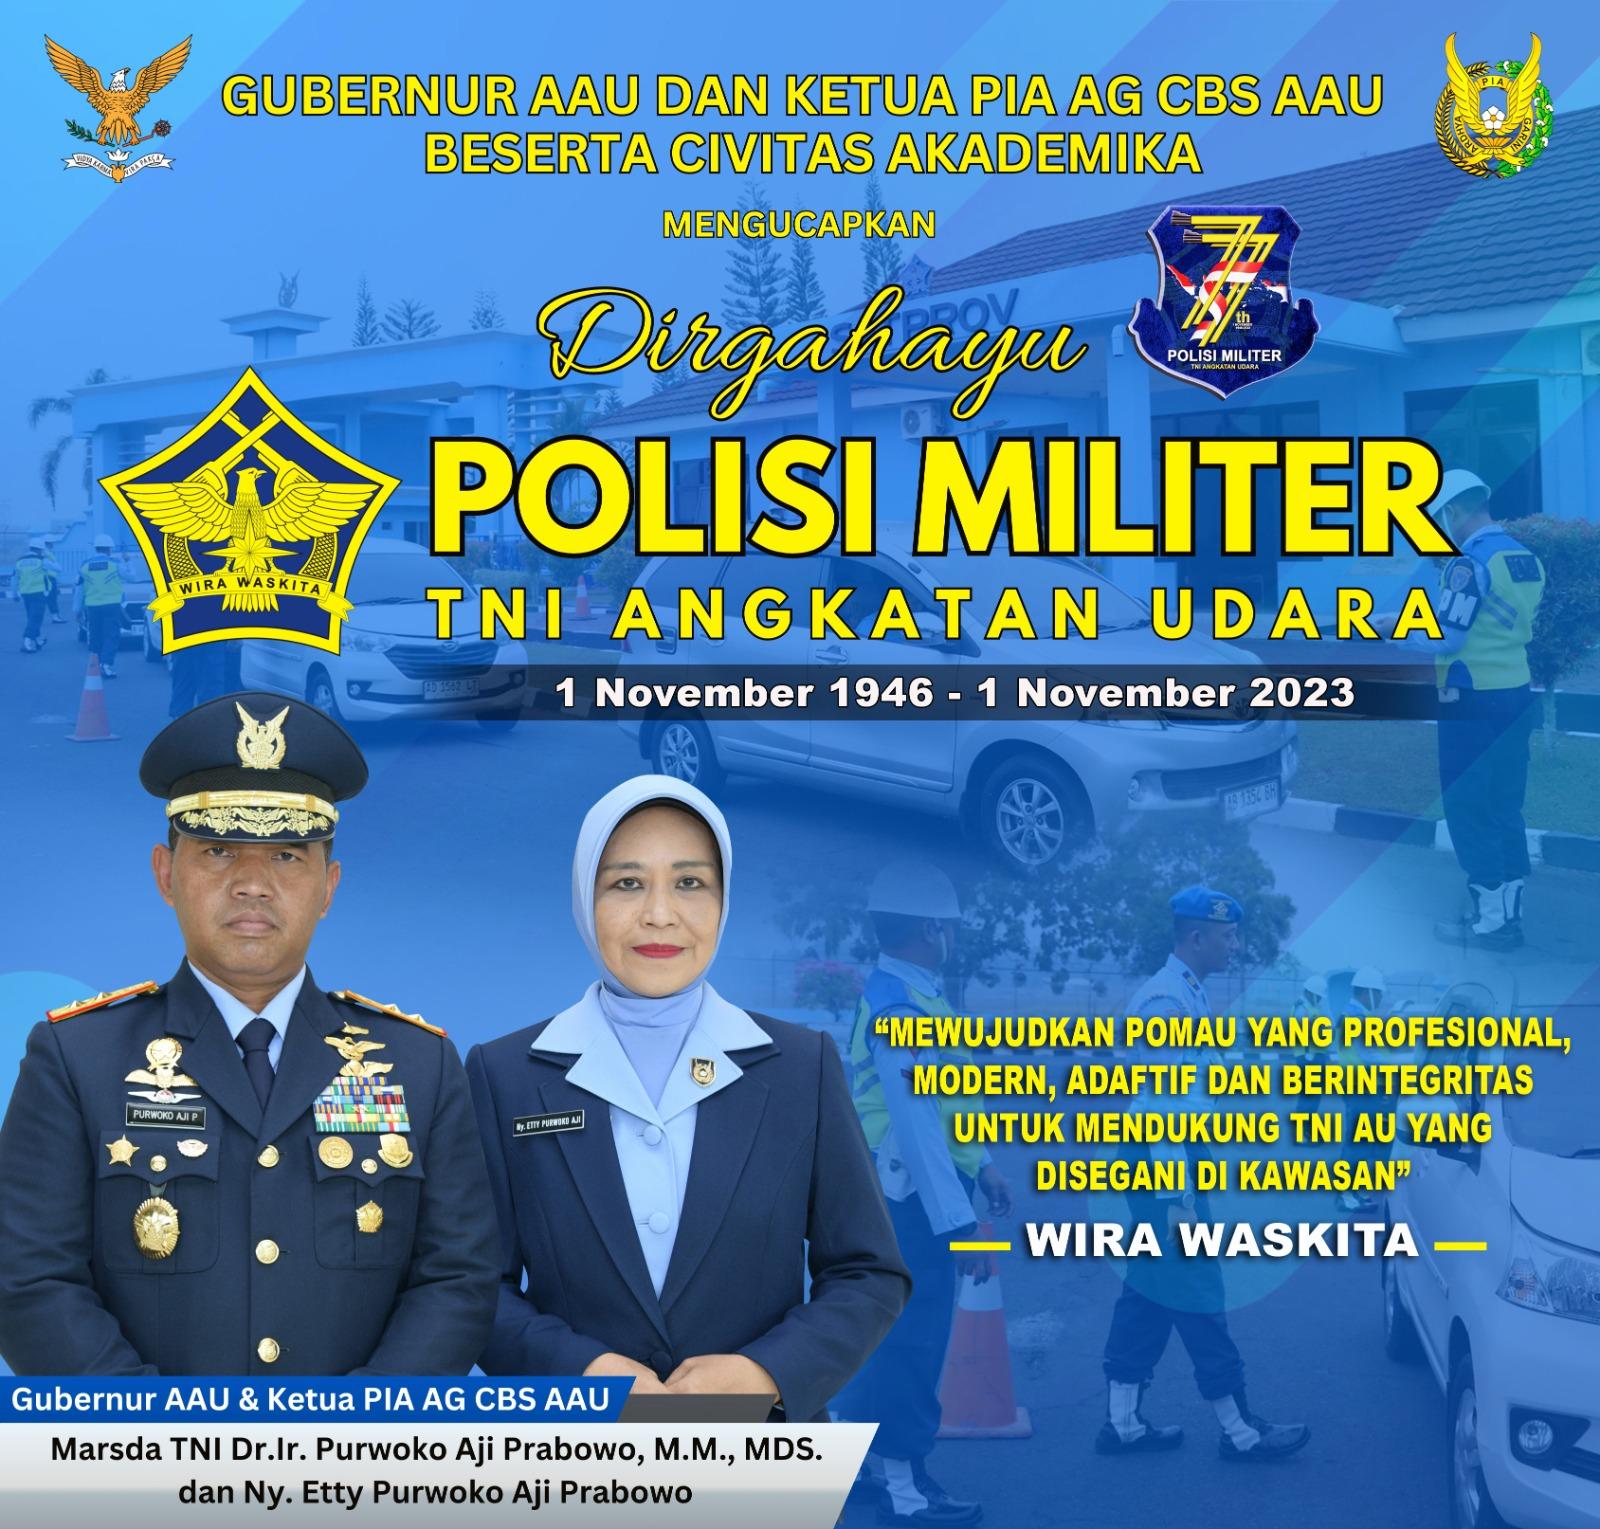 DIRGAHAYU POLISI MILITER TNI ANGKATAN UDARA